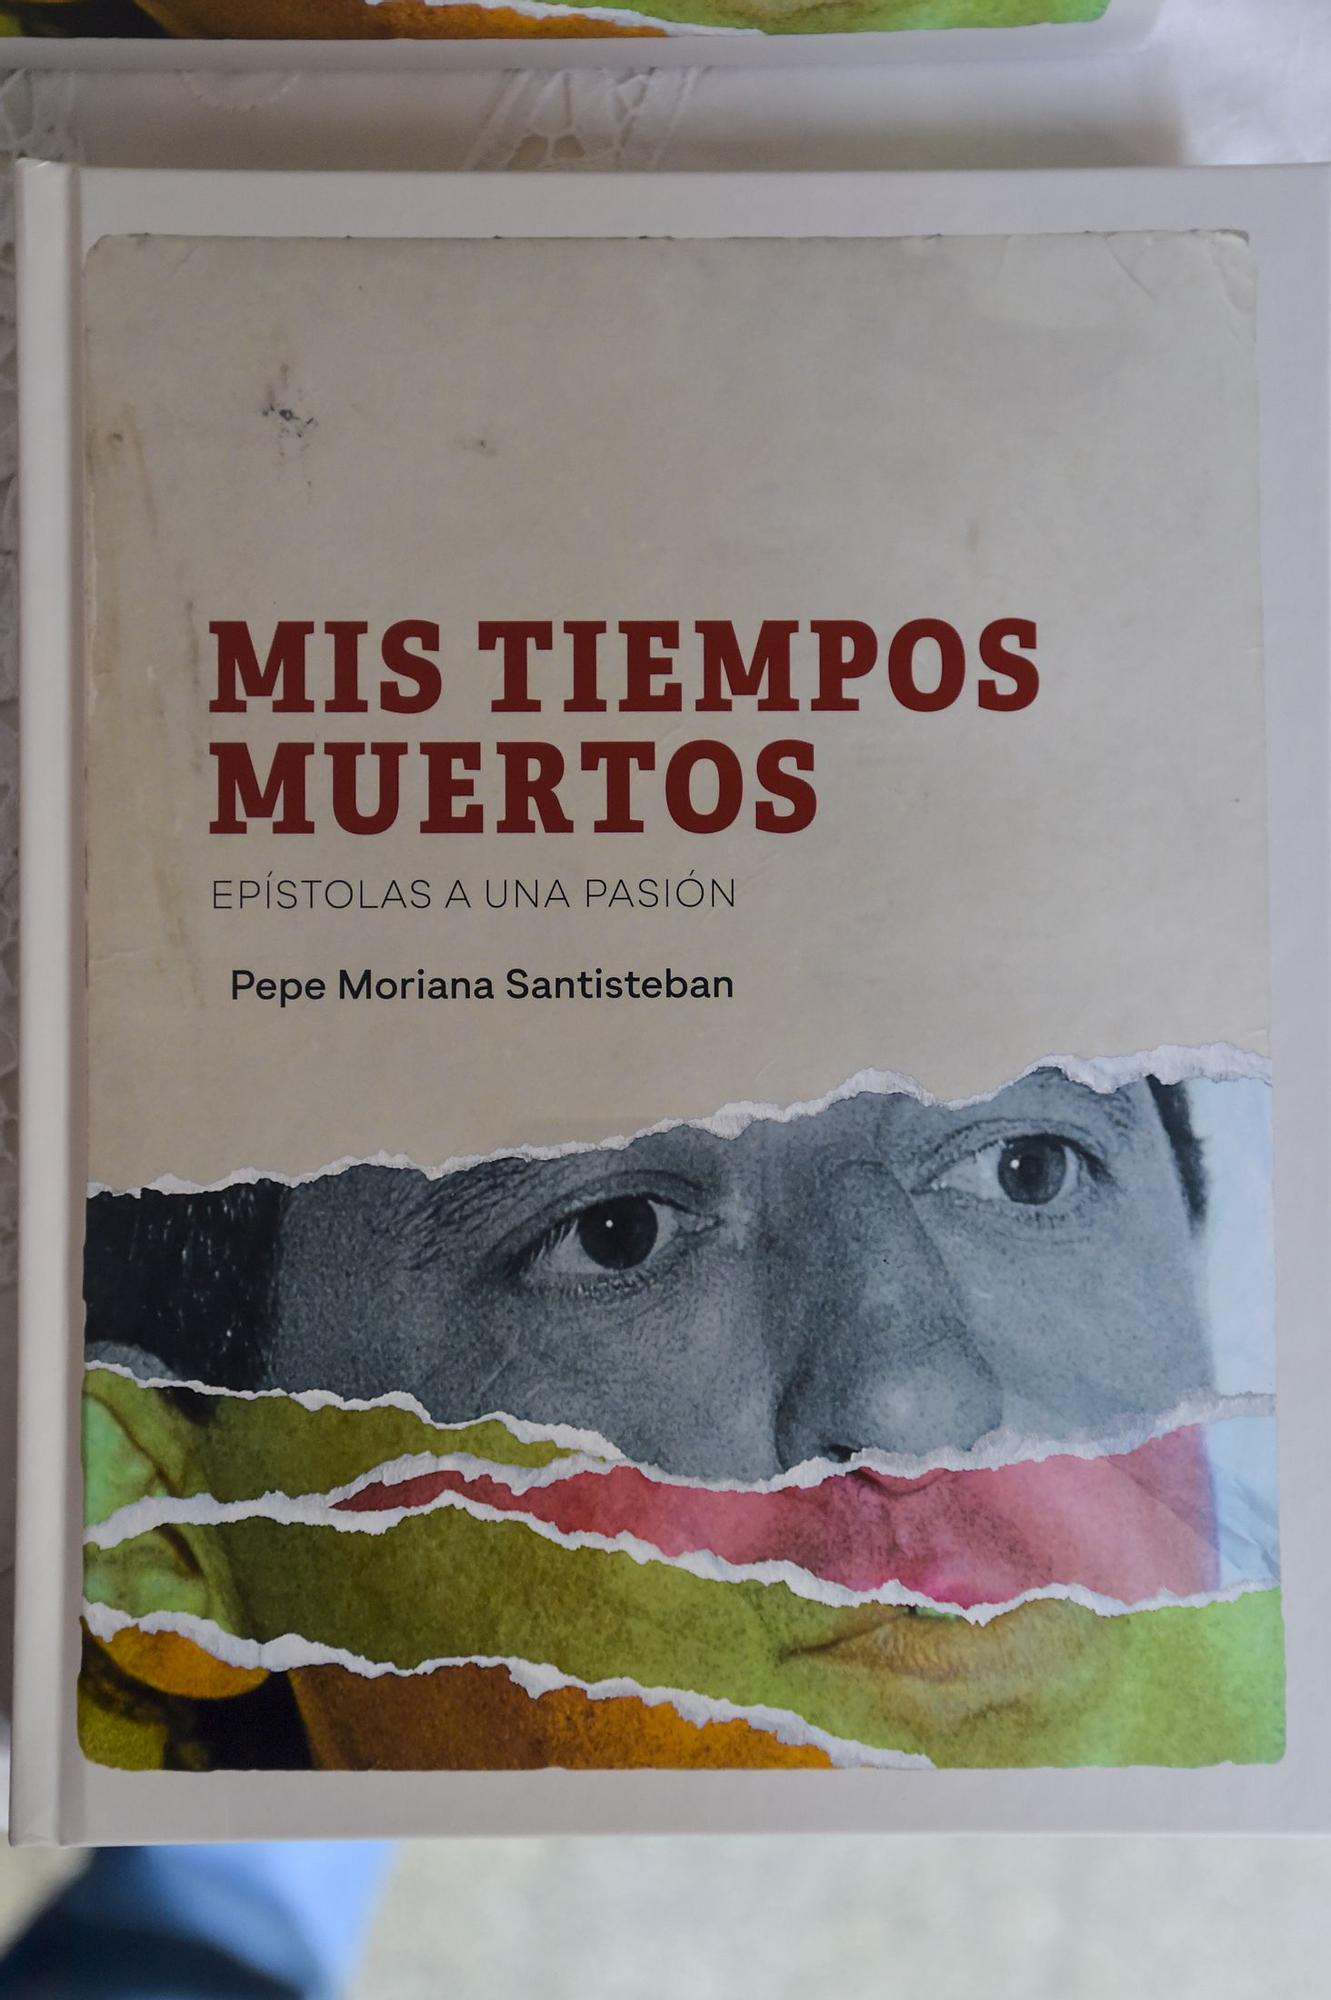 Presentación del libro 'Mis tiempos muertos' de Pepe Moriana